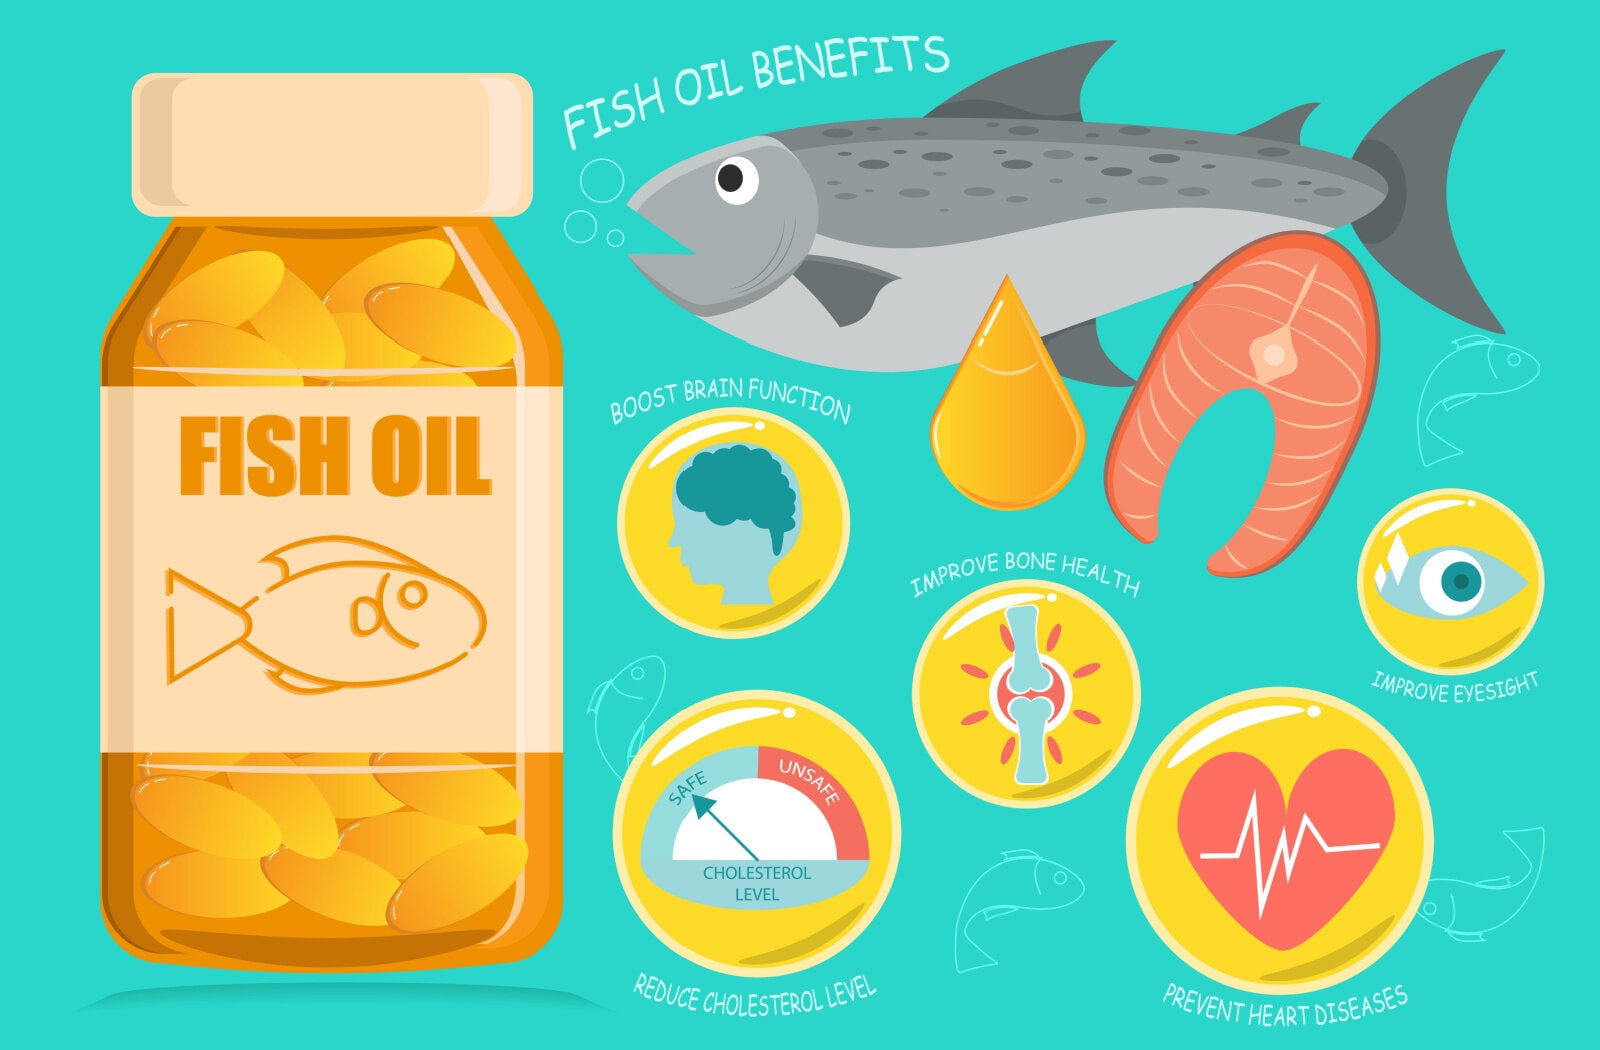 Fish Oil FAQs